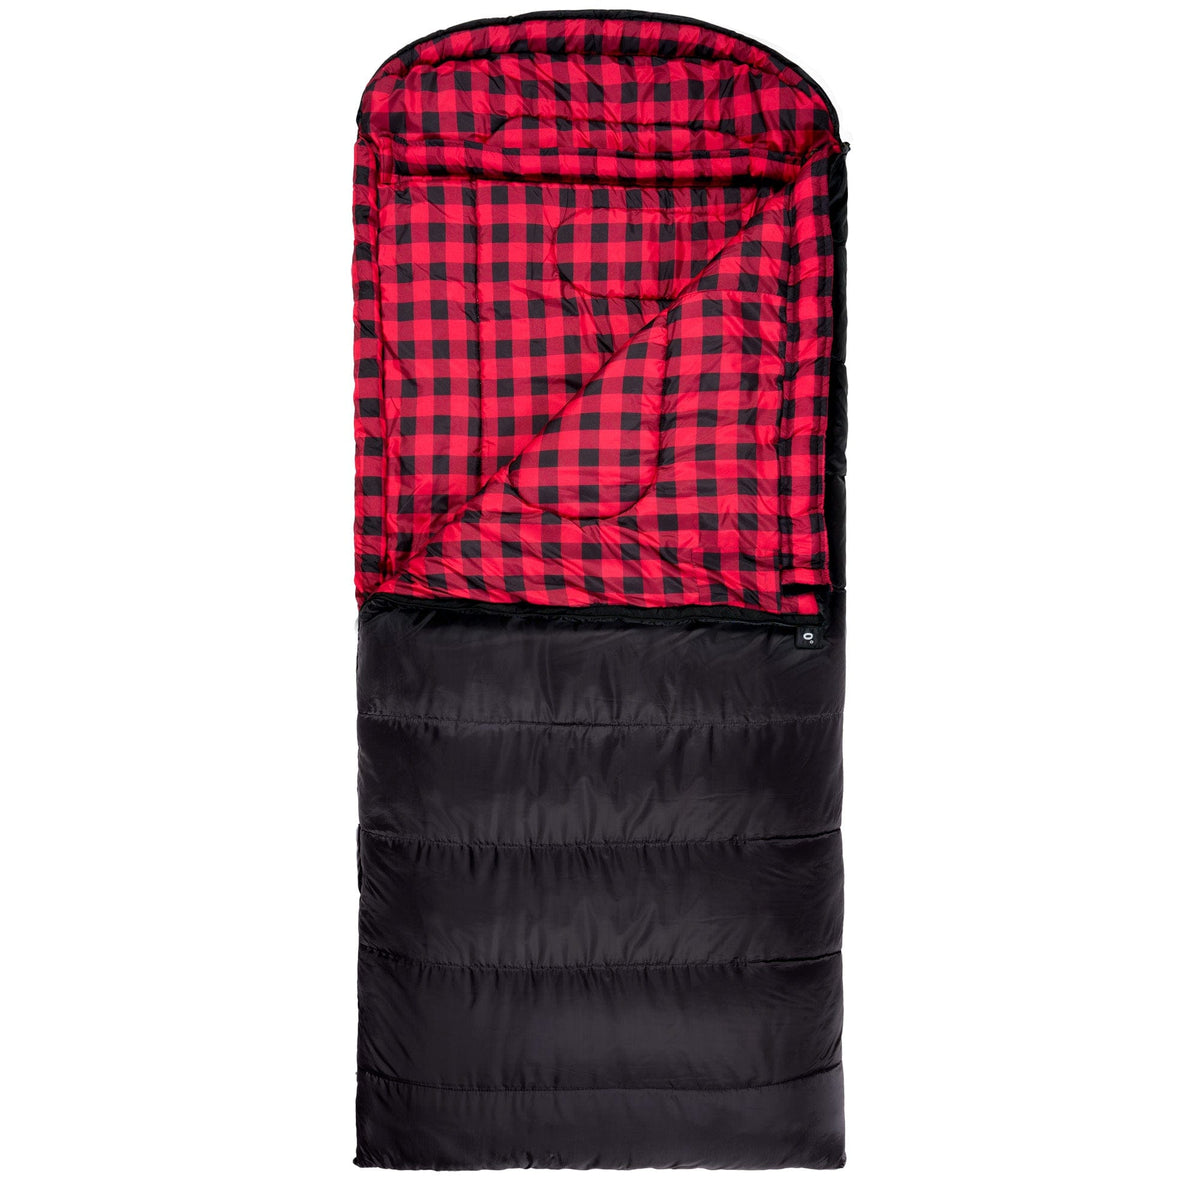 https://cdn.shopify.com/s/files/1/0638/4900/5294/products/101r-teton-sports-celsius-xxl-0-f-sleeping-bag-right-zipper-black-red-38931935068398_1200x.jpg?v=1679675176